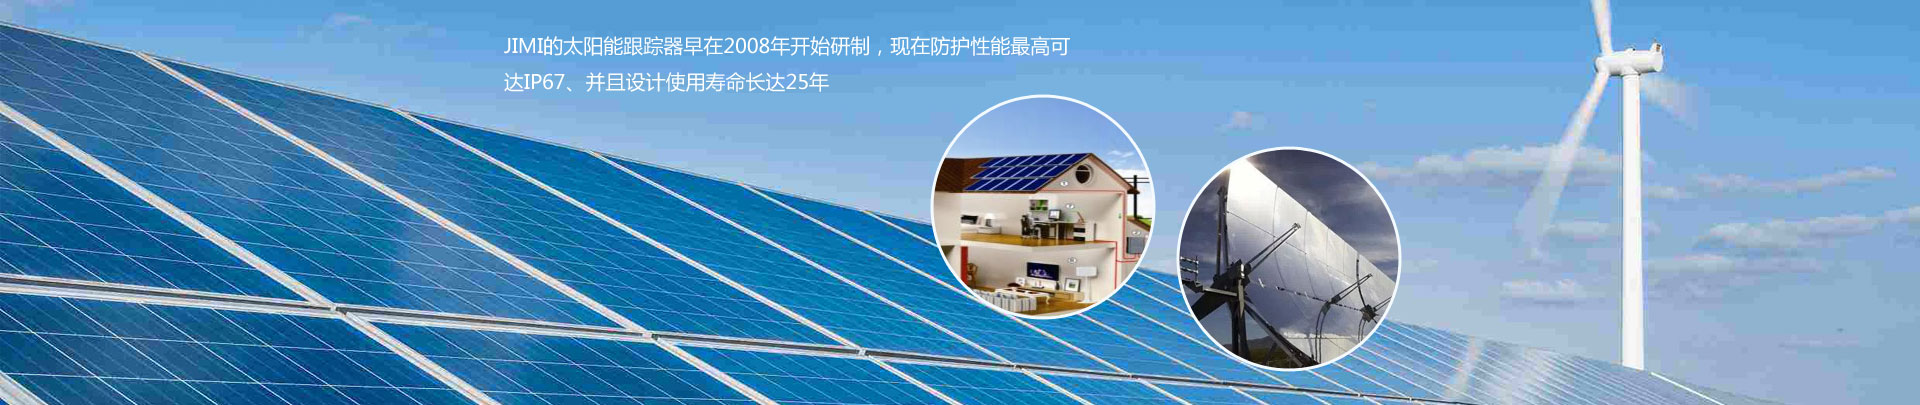 Shenzhen Jimei Huatai Technology Co., Ltd